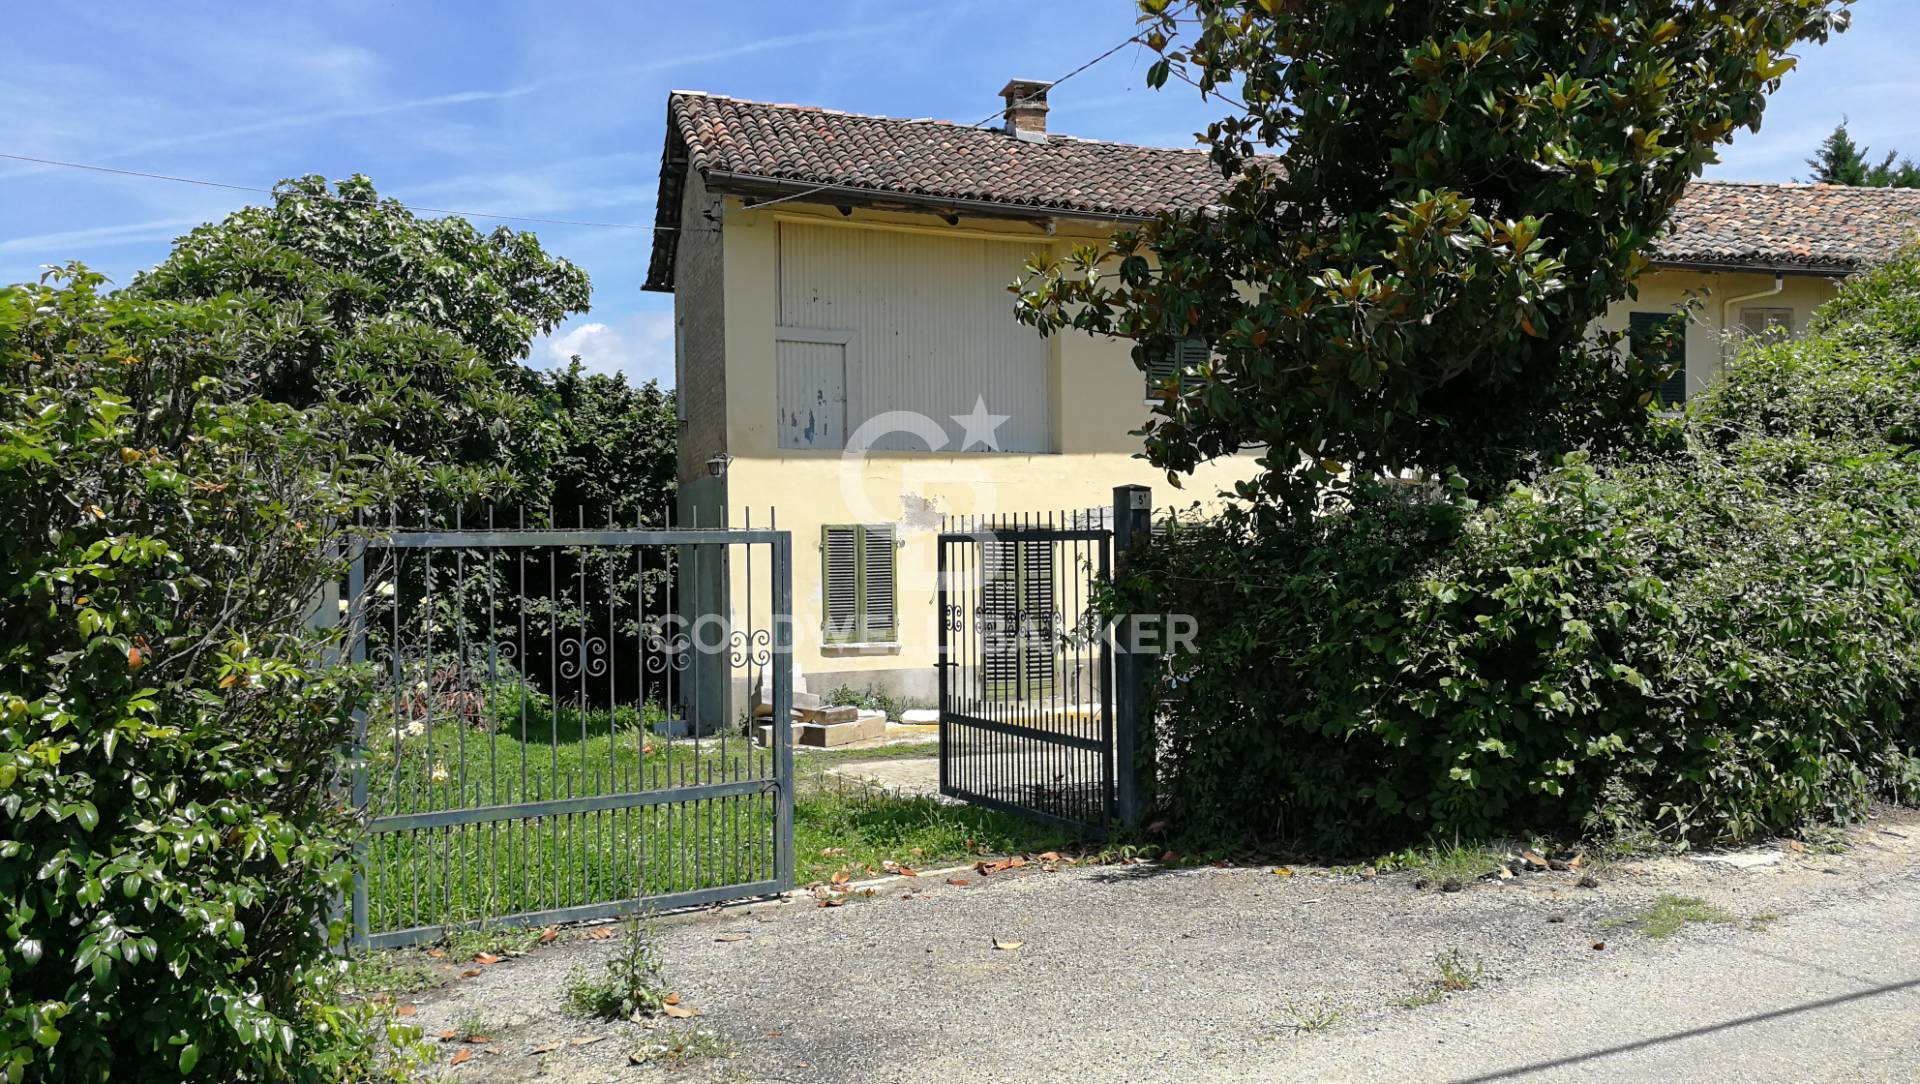 Rustico / Casale in vendita a Agliano Terme, 6 locali, prezzo € 190.000 | PortaleAgenzieImmobiliari.it